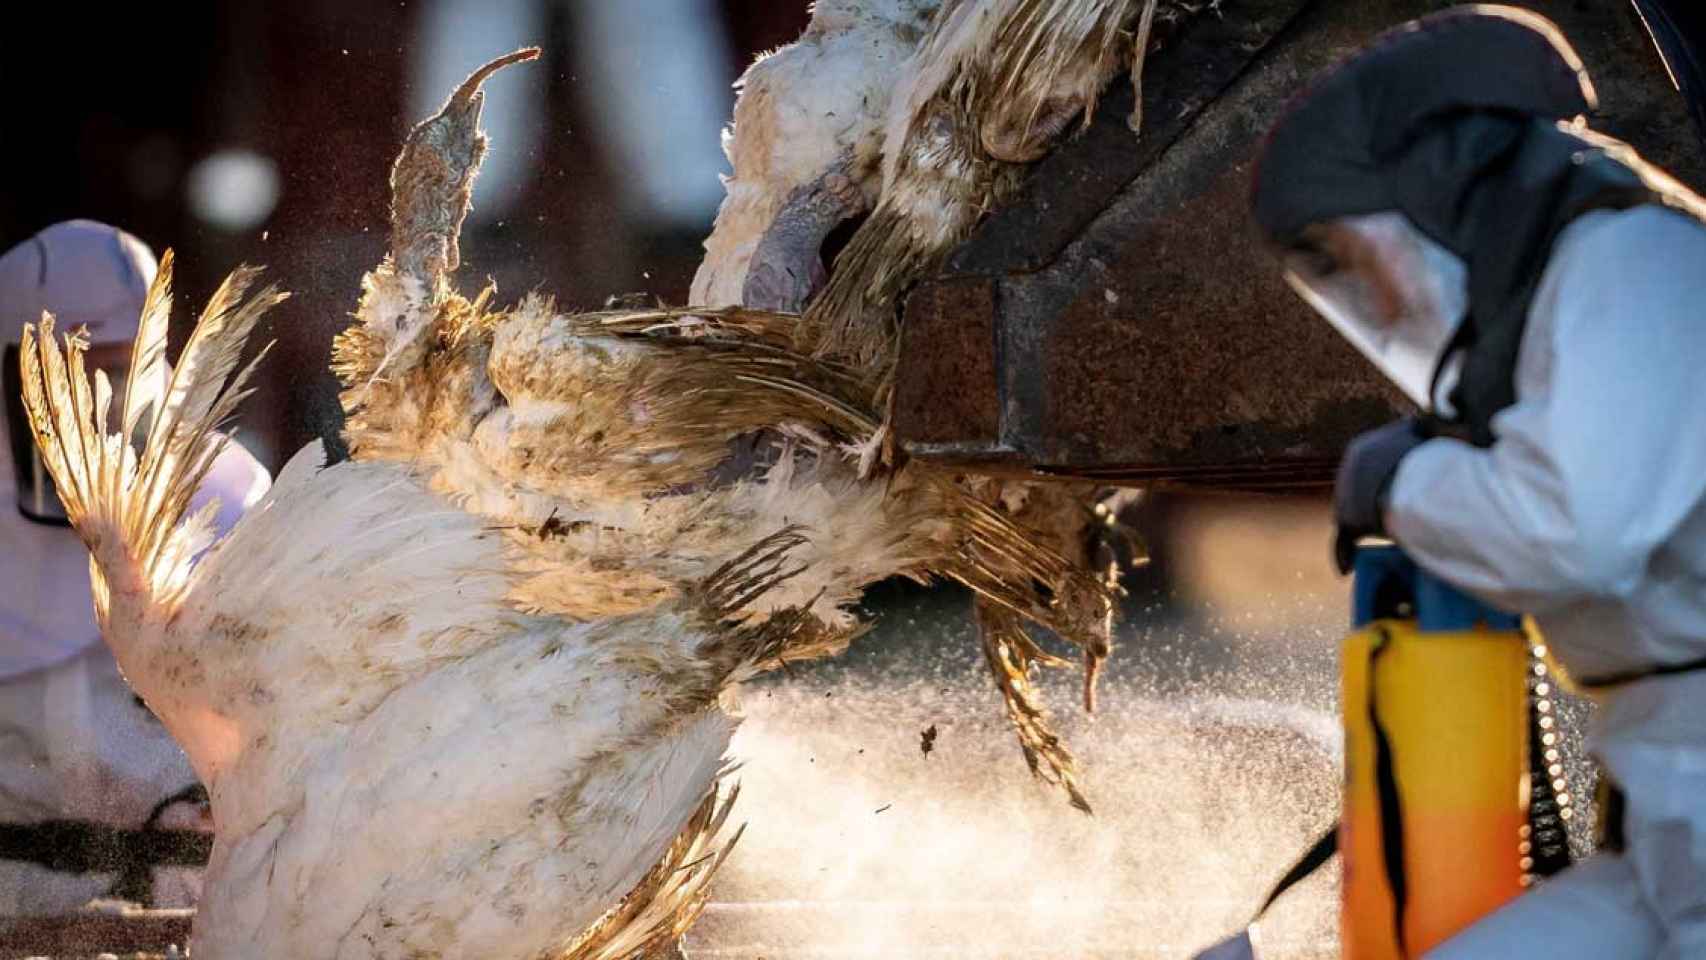 Trabajadores de la Administración de Veterinaria sacrifican a miles de pavos infectados de gripe aviar en una granja  / EUROPA PRESS